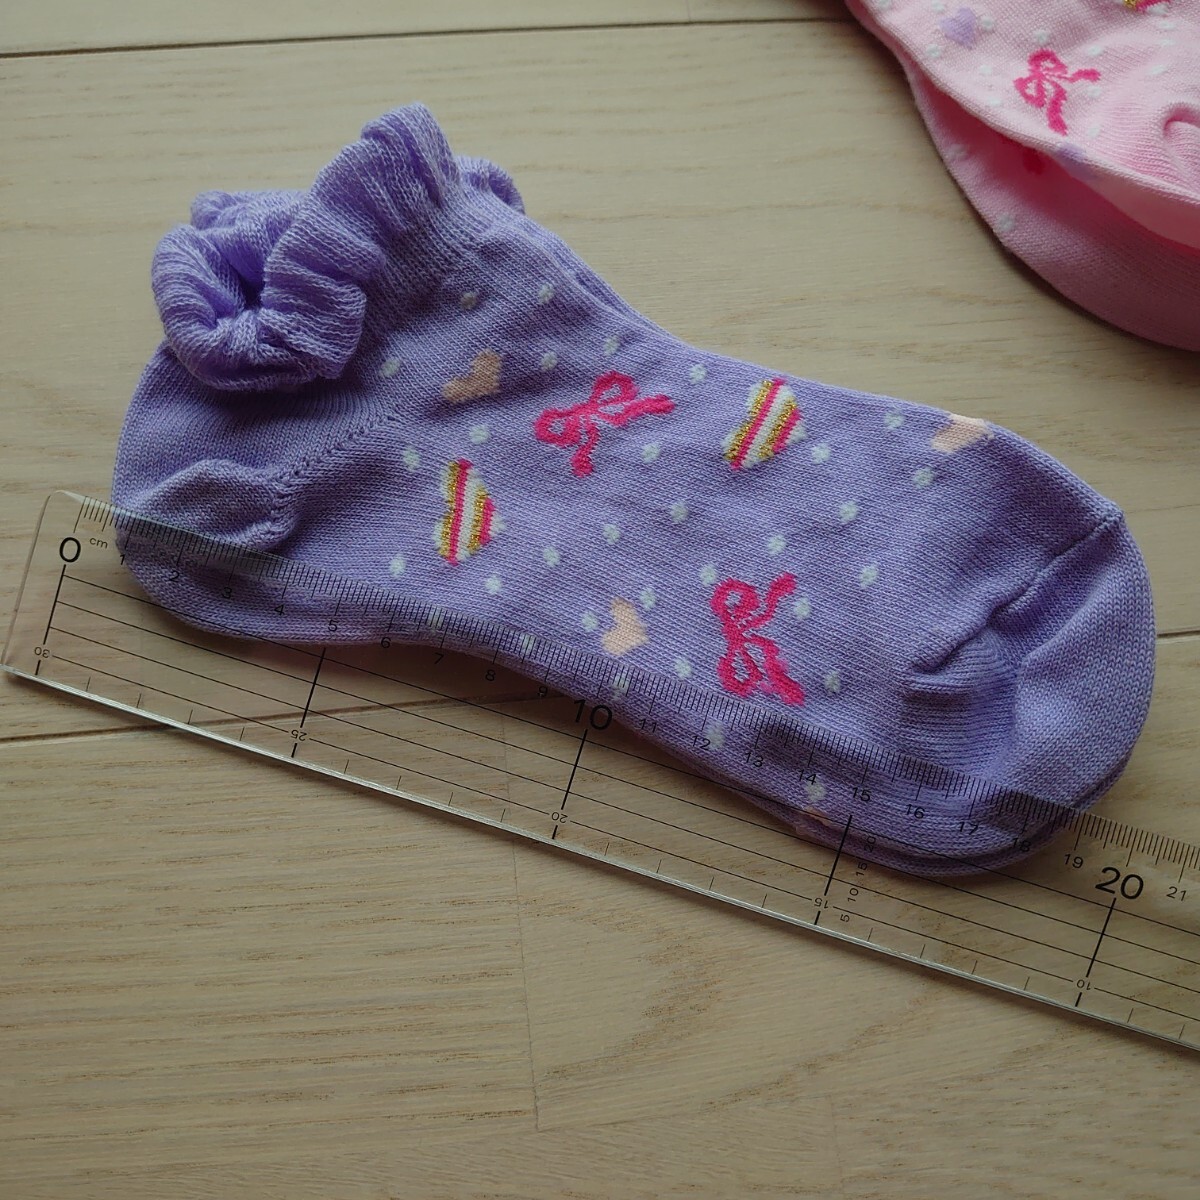 子供 衣類 靴下 ソックス キッズ 女の子 スニーカーソックス セット ピンク 薄紫 ボーダー リボン の画像2